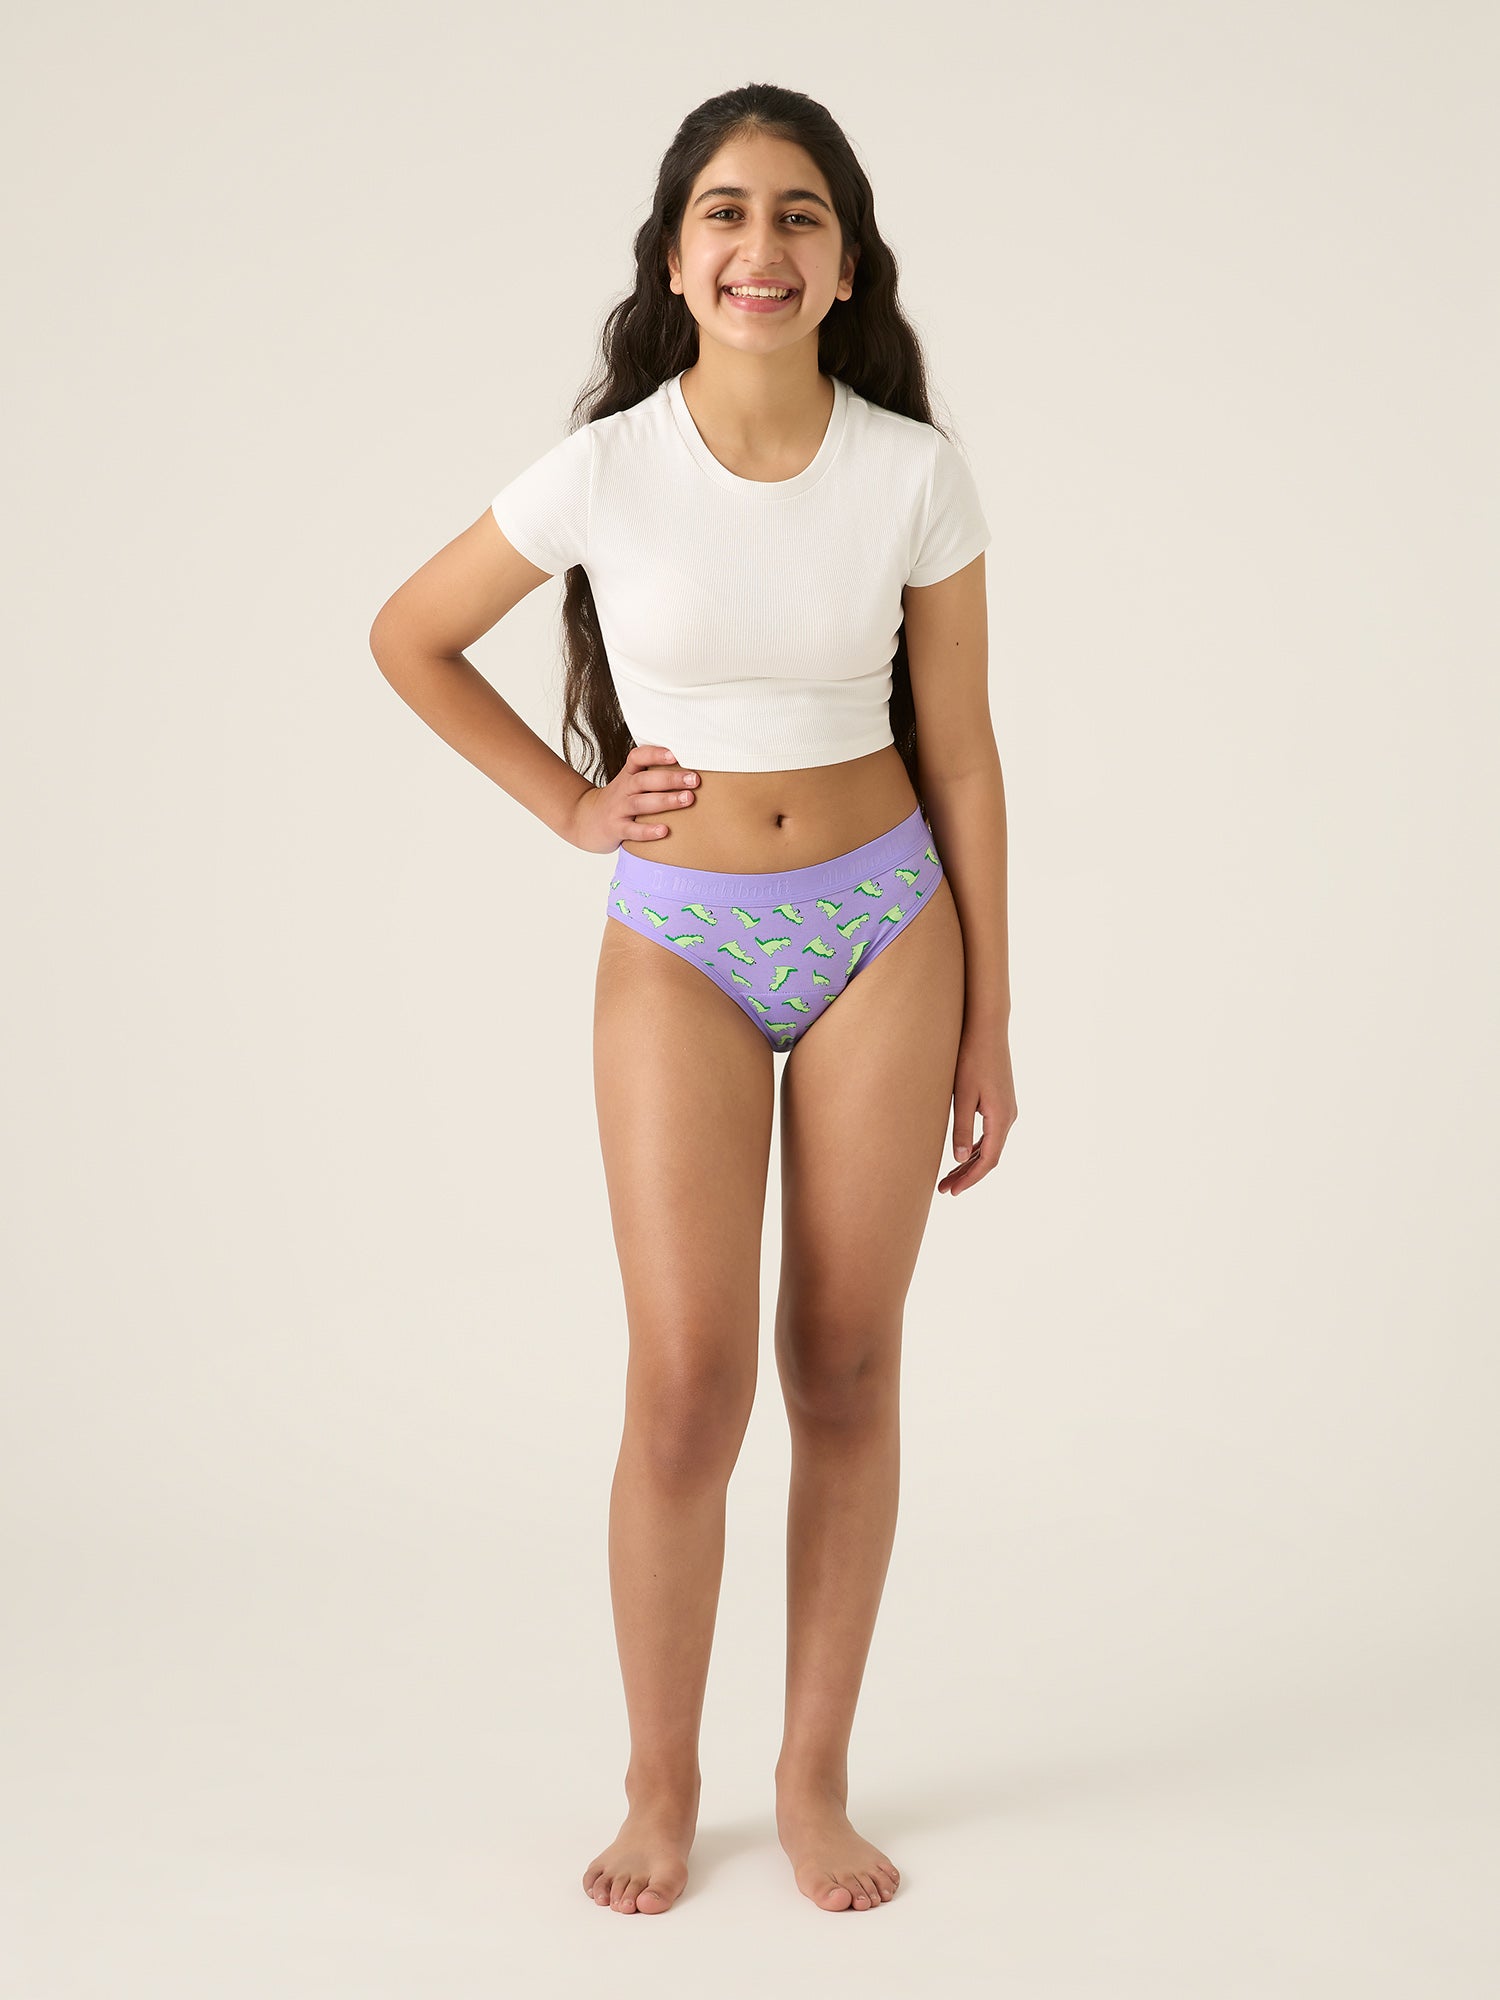 dennis chin add teen underwear models photo